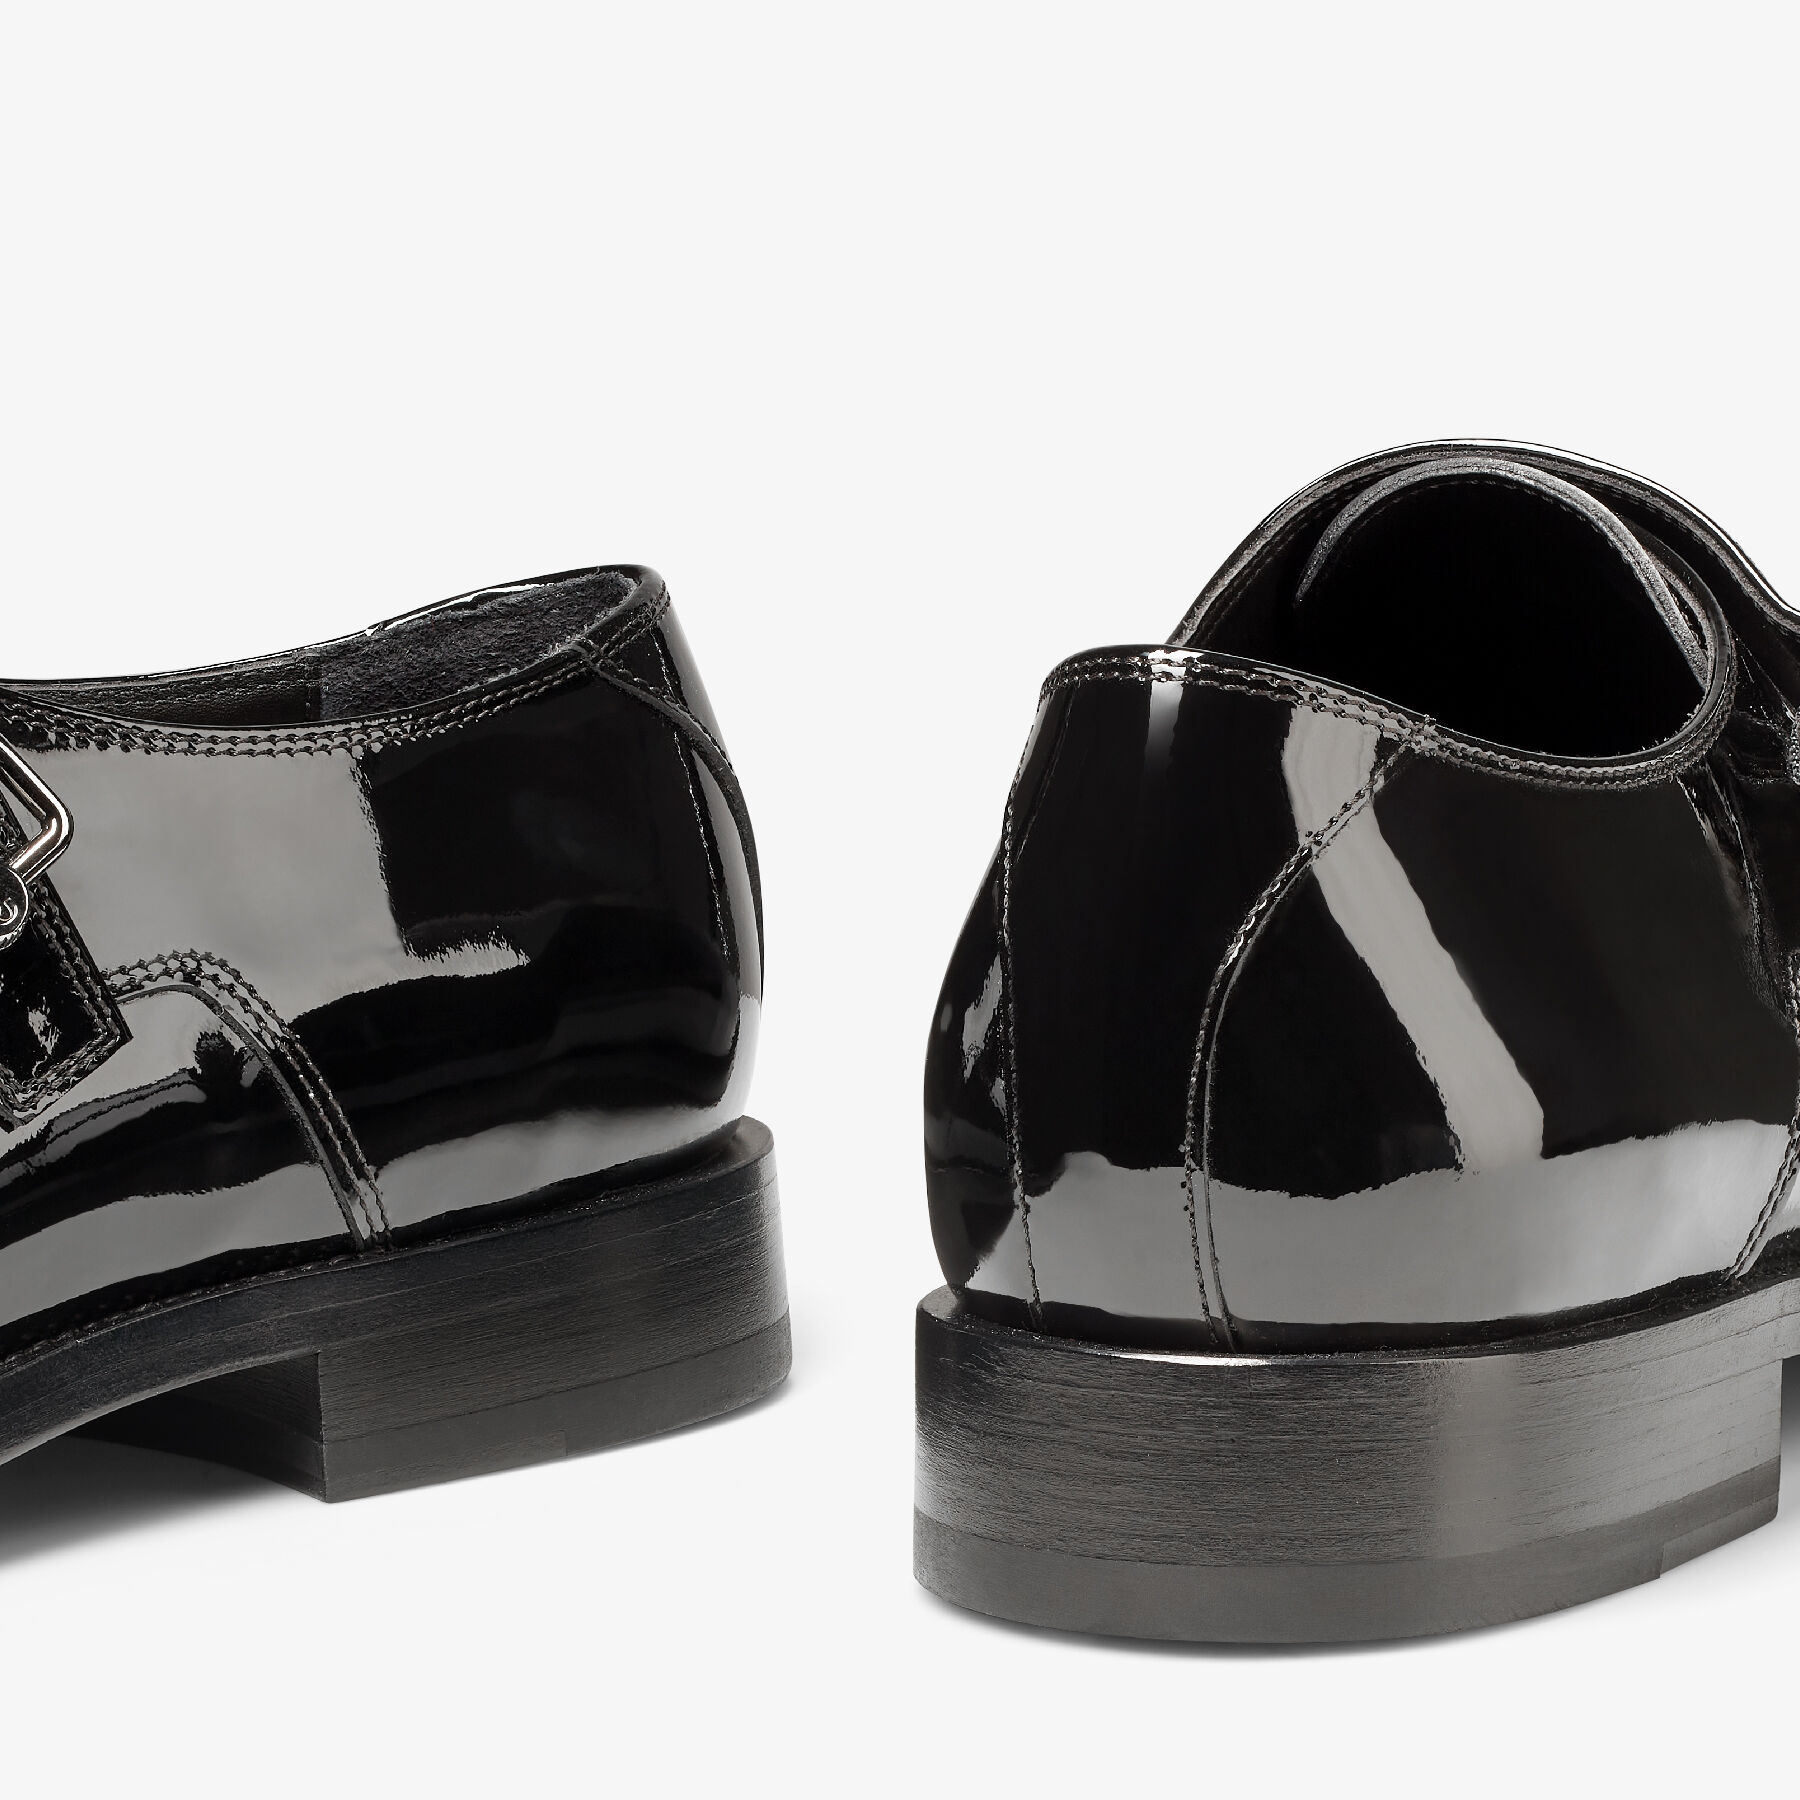 Ladies Jason Samuels Smith Tap Shoes, Black Patent – BLOCH Dance US